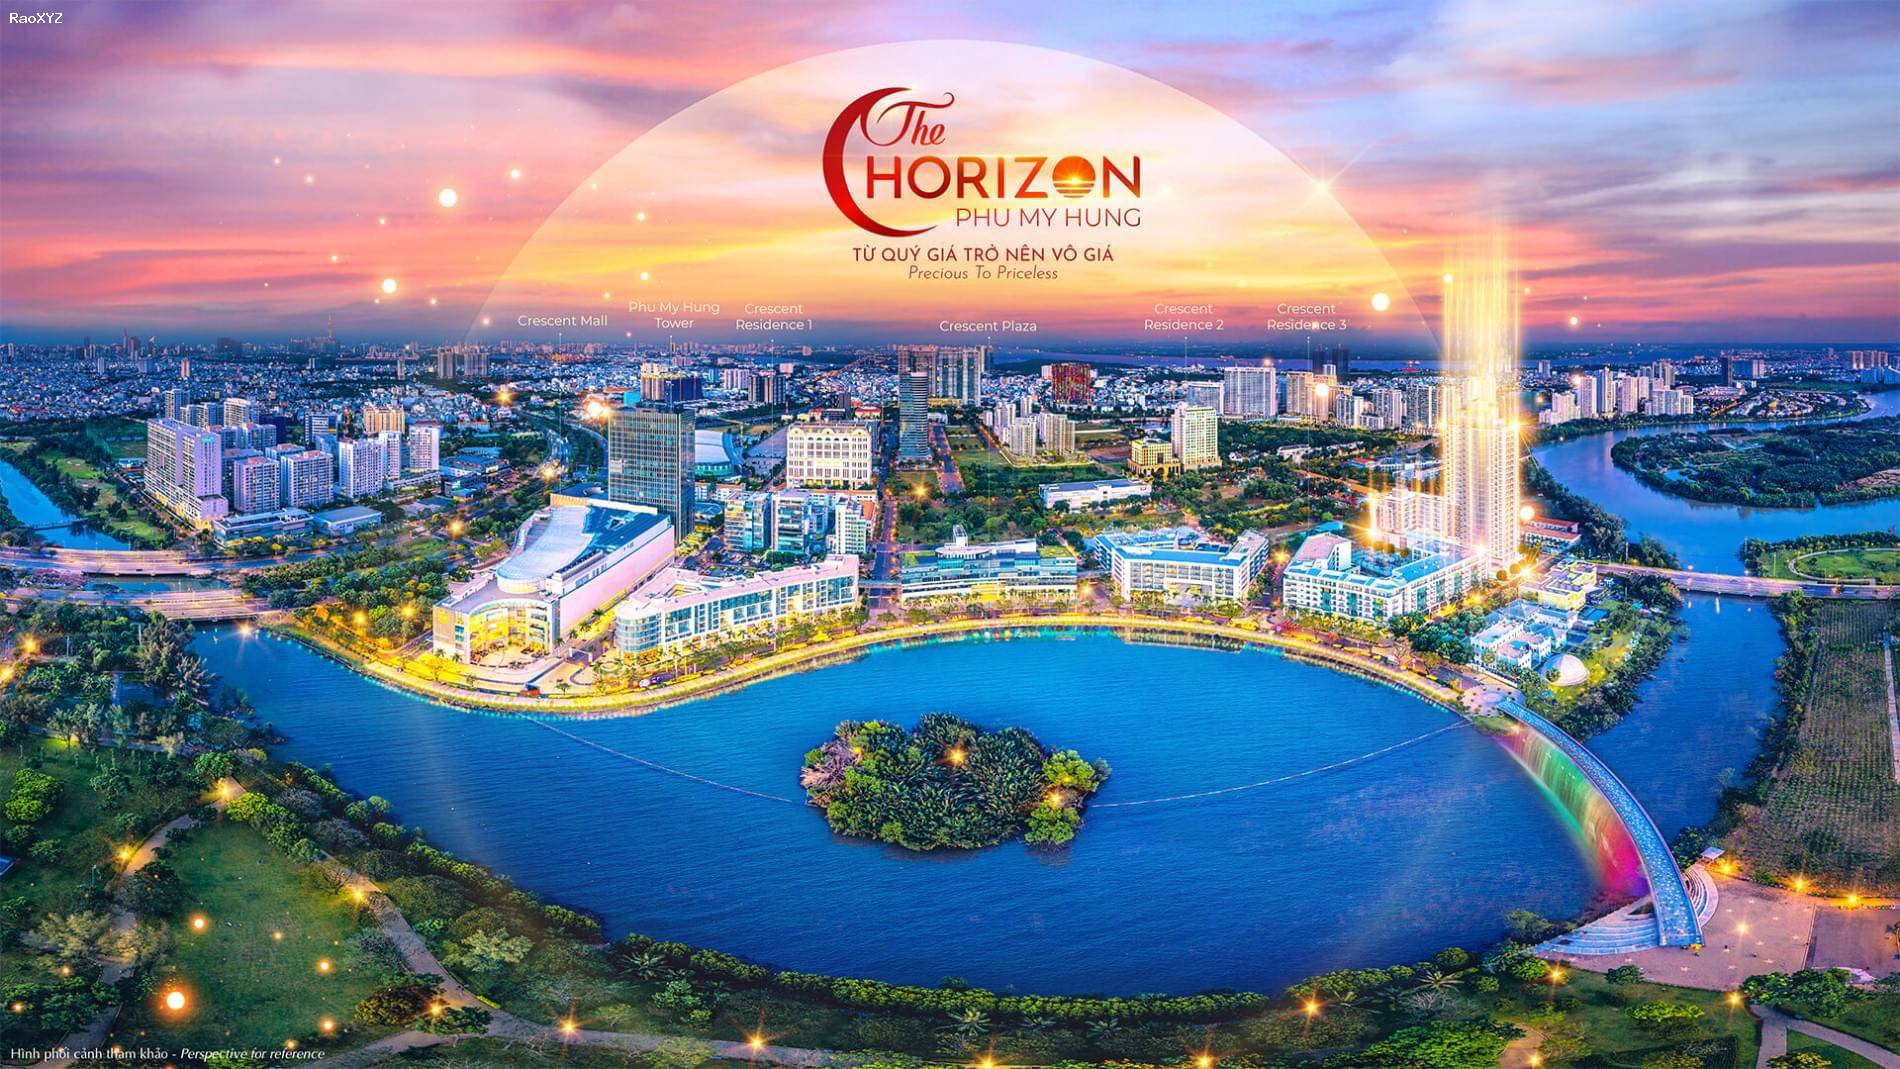 Căn hộ Horizon Hồ Bán Nguyệt 3PN 145m2 có 2 view đặc biệt khan hiếm mua trực tiếp chủ đầu tư Phú Mỹ Hưng - Ngân hàng hỗ trợ 0% ls đến t12/2025, chiết khấu cao